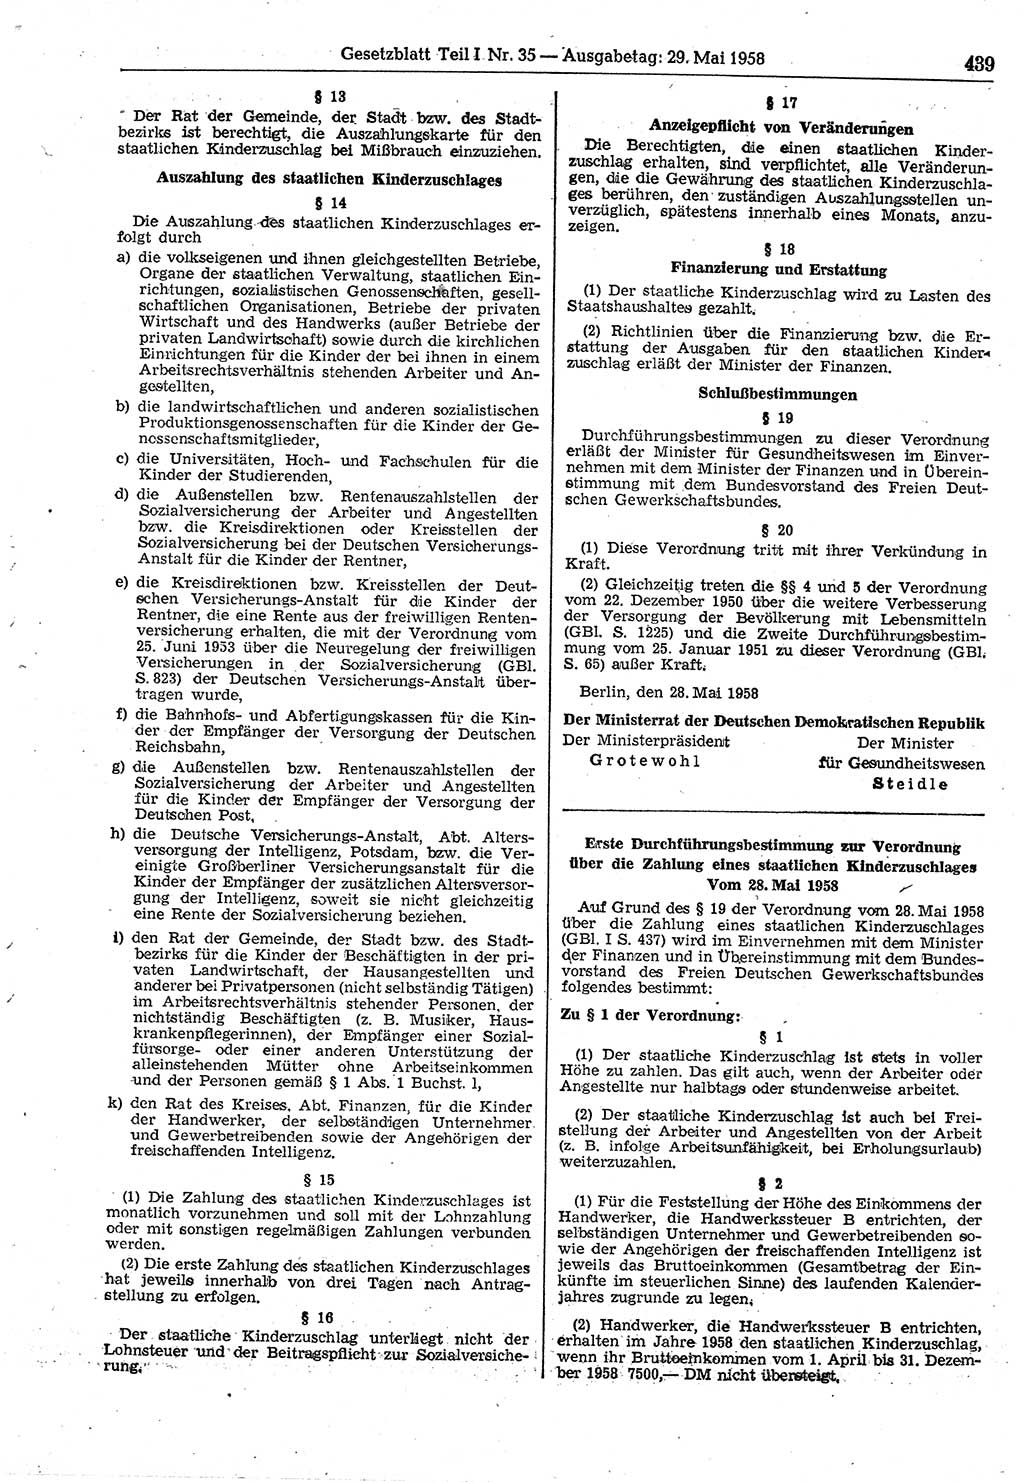 Gesetzblatt (GBl.) der Deutschen Demokratischen Republik (DDR) Teil Ⅰ 1958, Seite 439 (GBl. DDR Ⅰ 1958, S. 439)